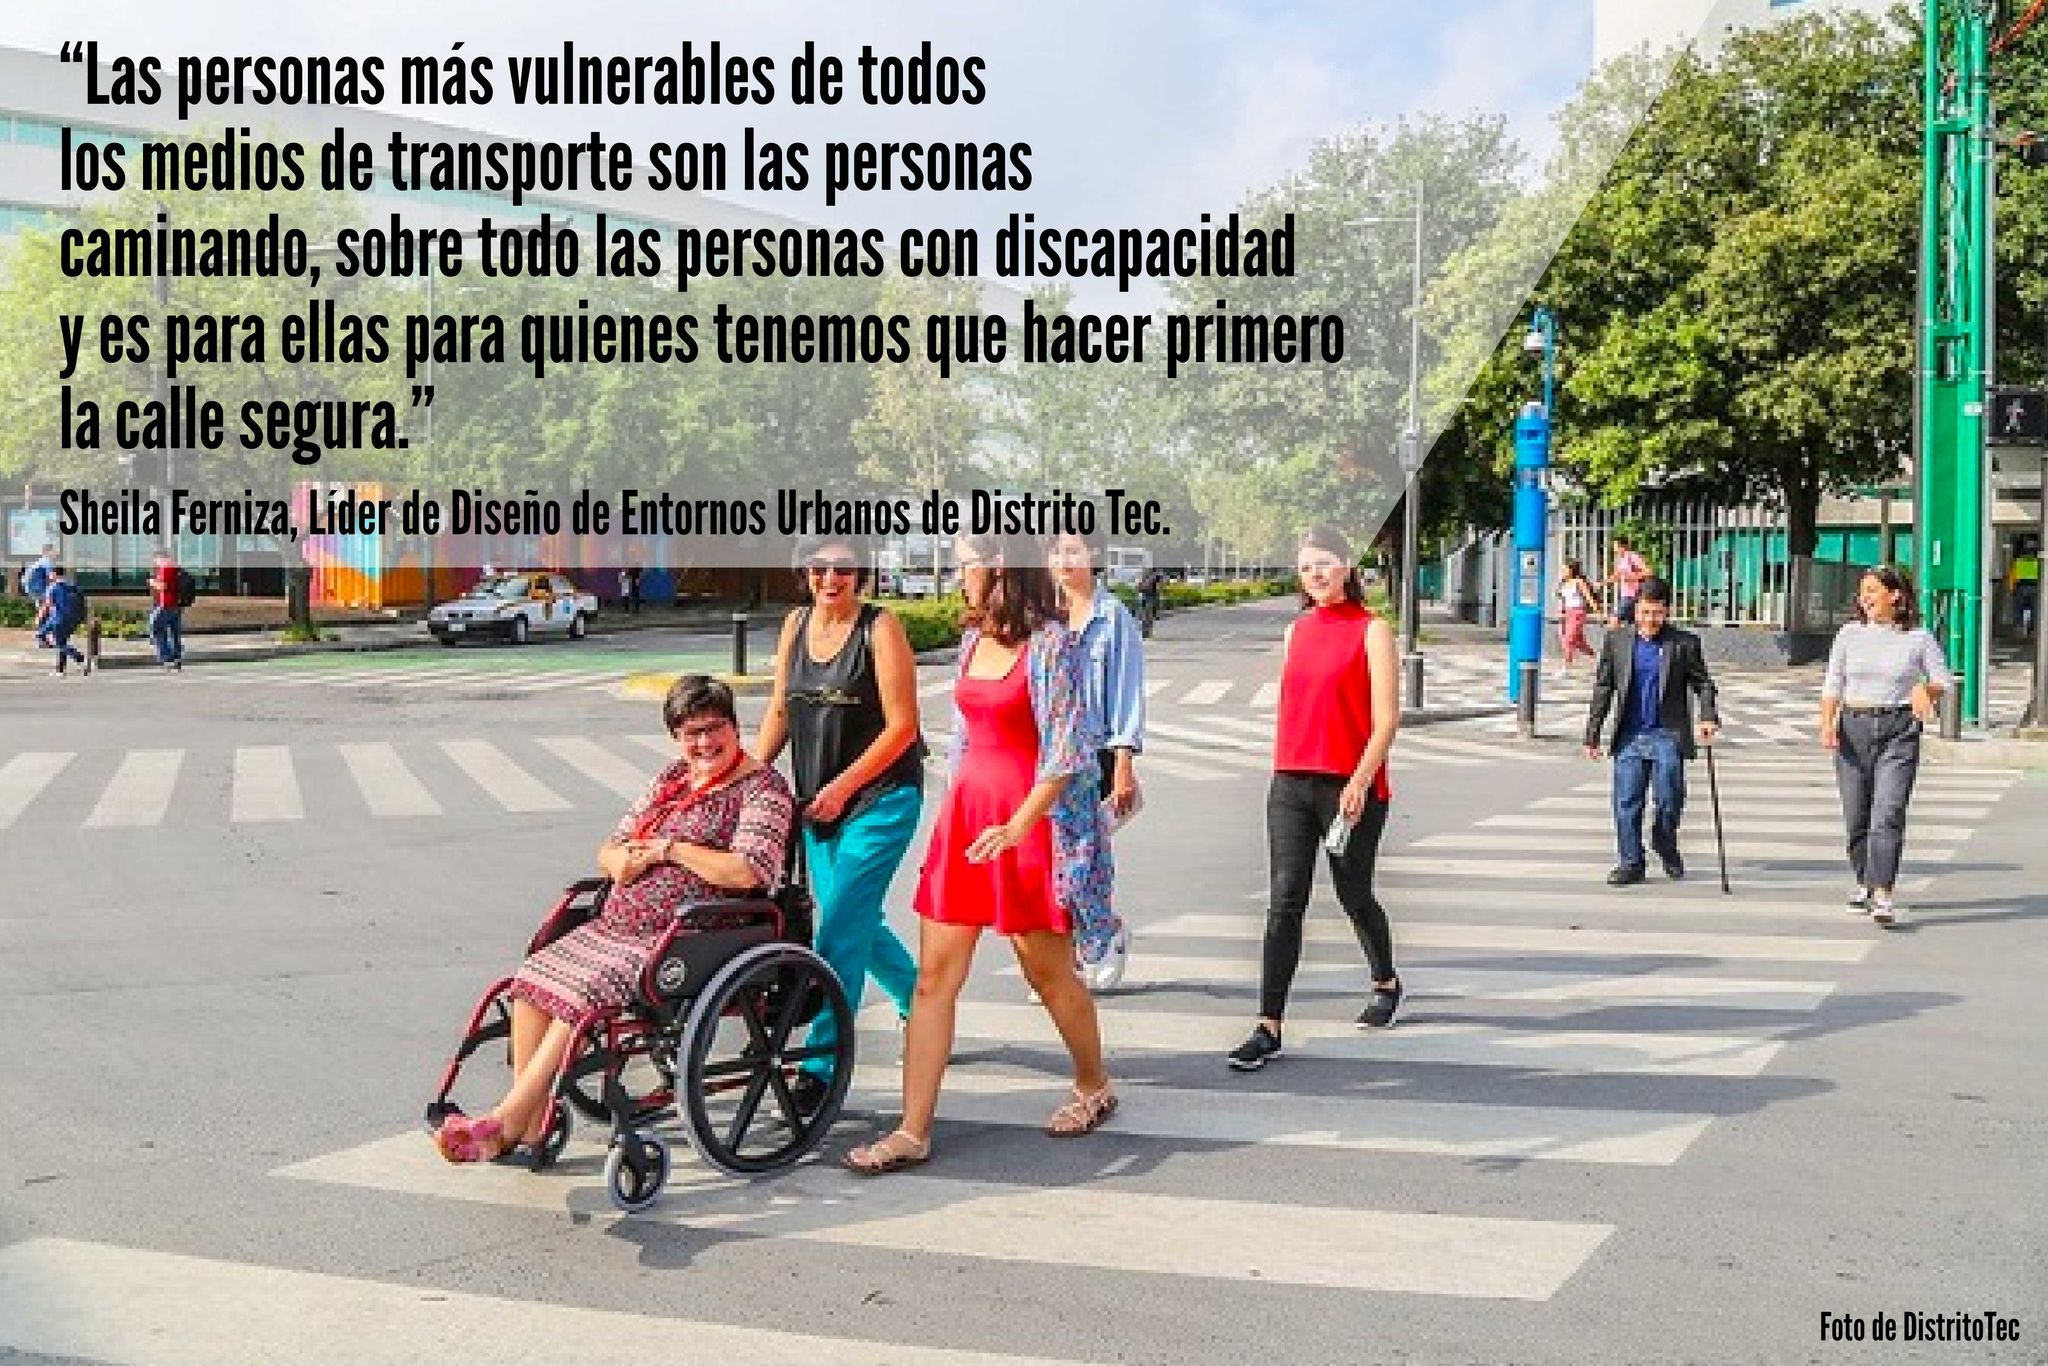 Las Calles Completas de Distrito Tec permiten a las personas con discapacidad desplazarse con seguridad, ya que el diseño de accesibilidad universal fue supervisado por expertos en el tema. Crédito: Estebán Iván Quistiano Loredo